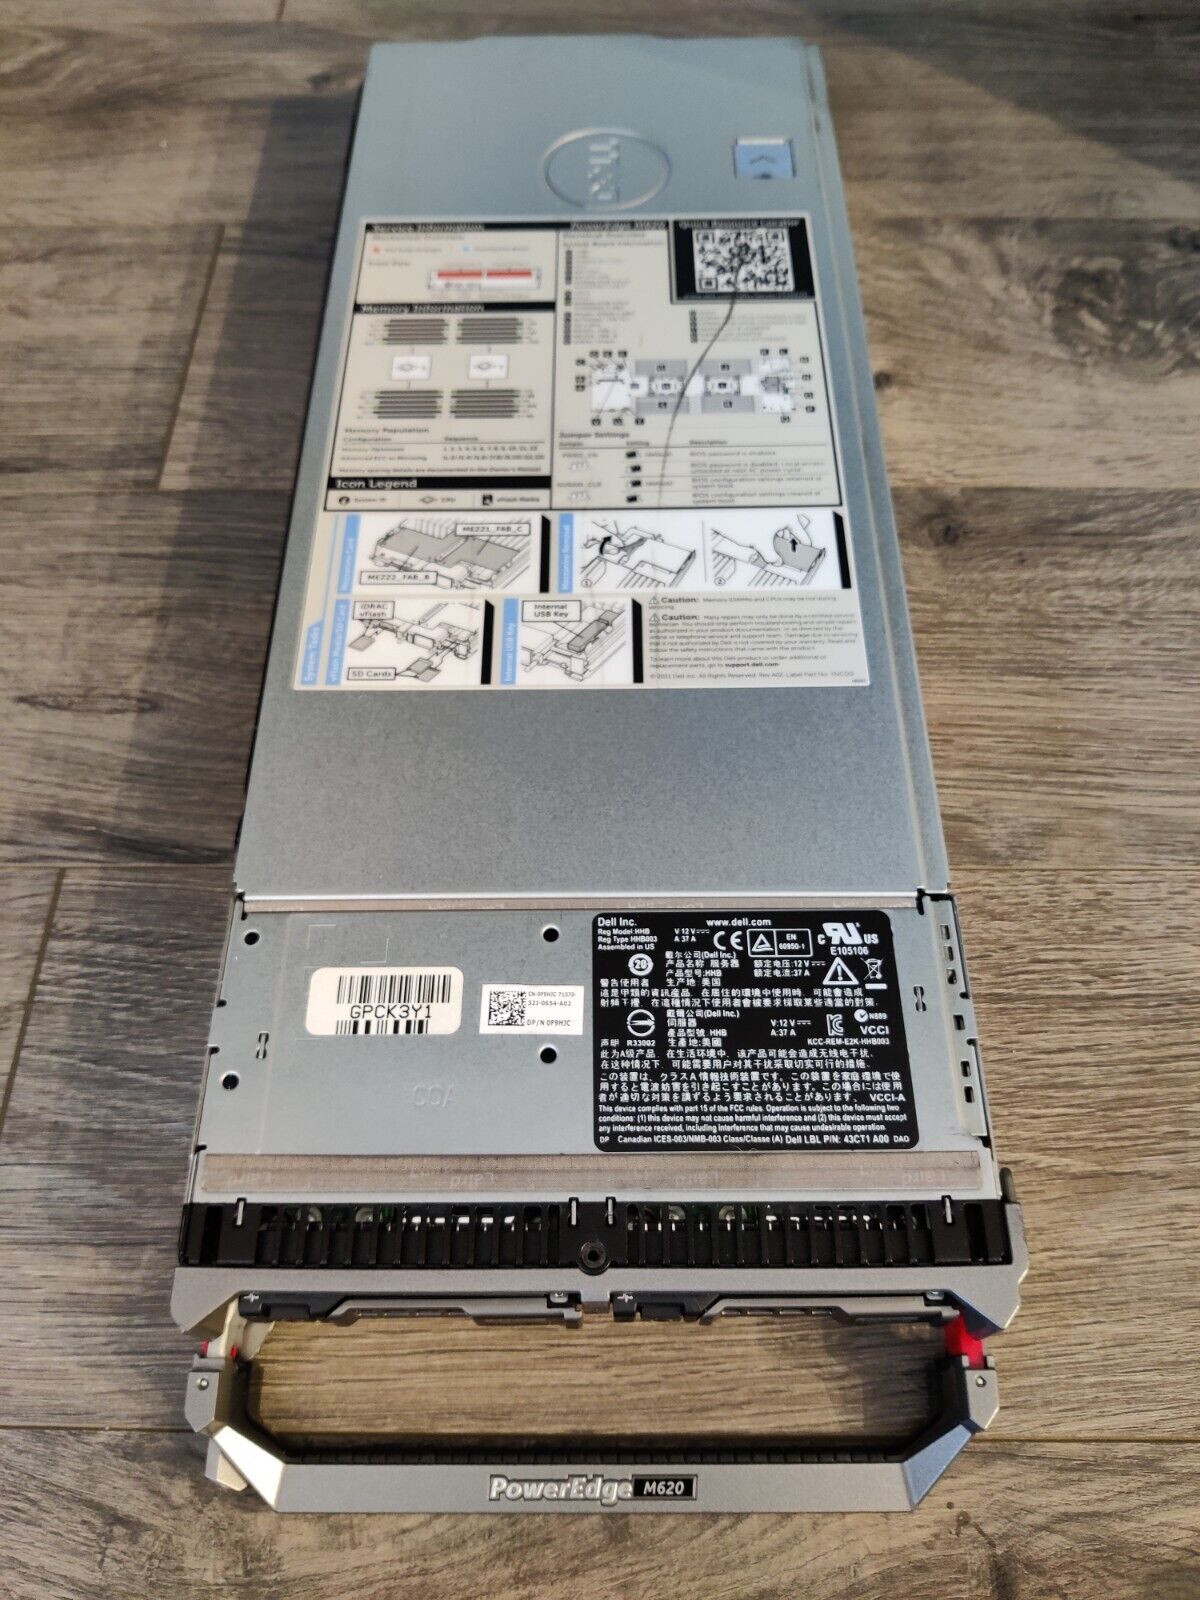 Dell PowerEdge M620 Blade Server - E5-2670 2.6GHz, 256GB RAM, 146GB SAS HDDs